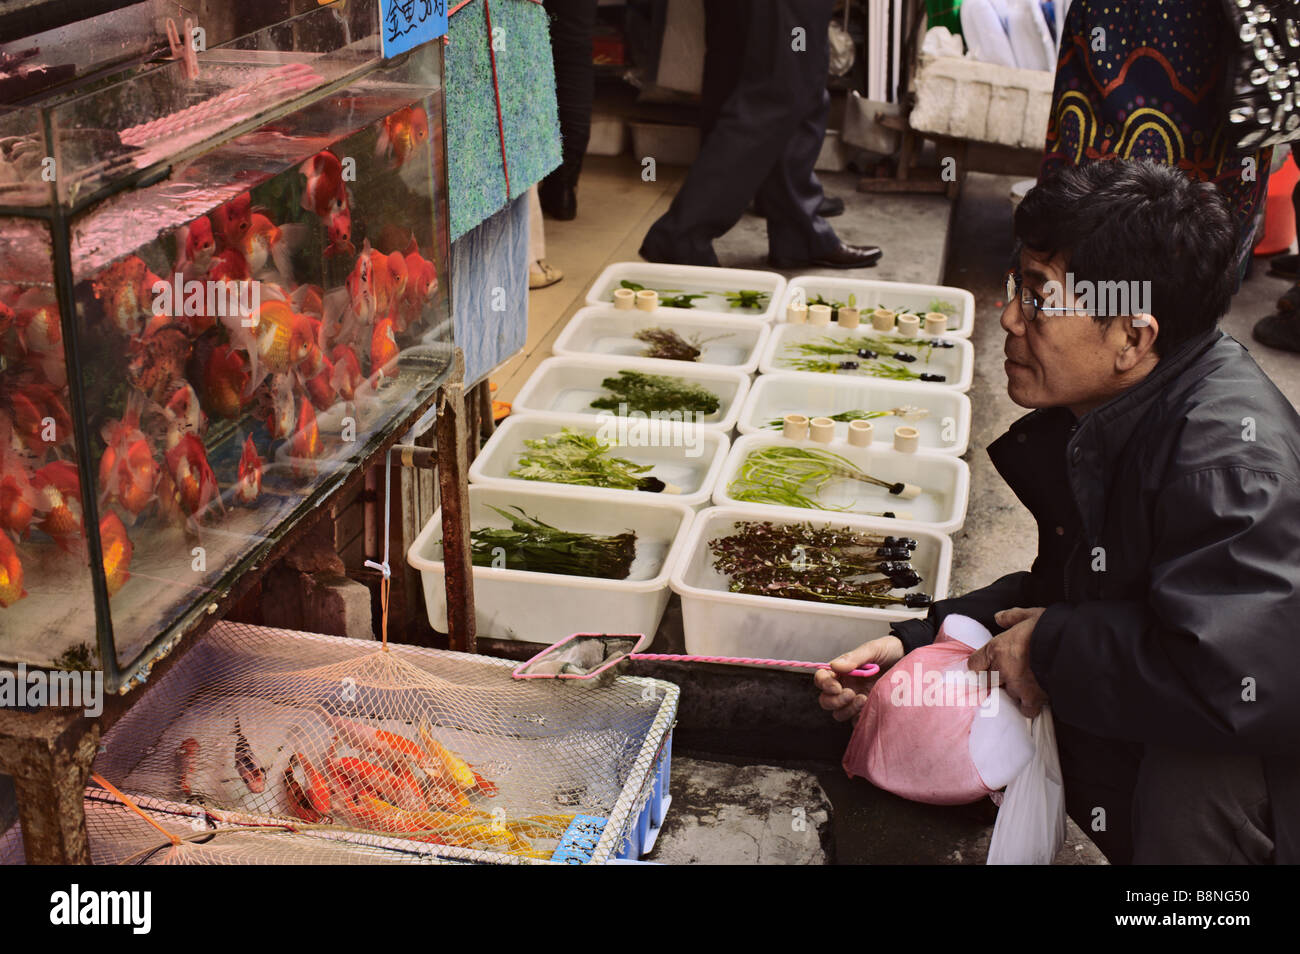 L'homme regardant de réservoir à poisson de couleur orange de la rue du marché à Guangzhou Chine Banque D'Images